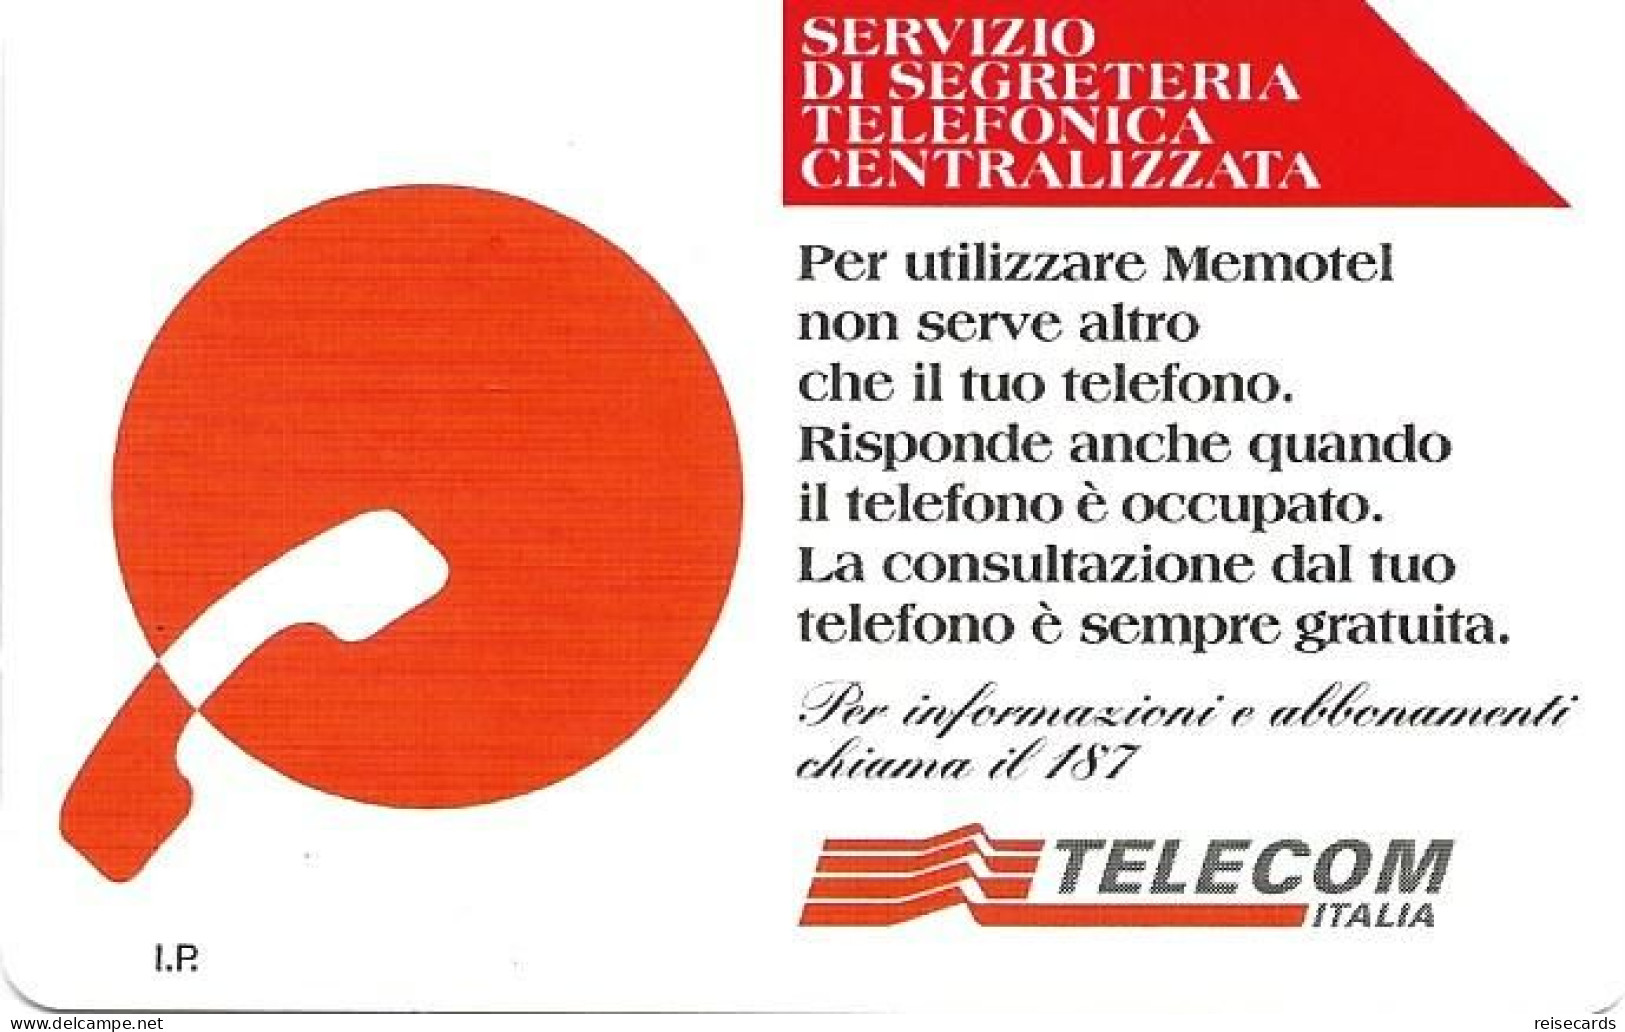 Italy: Telecom Italia - Servizio Di Segreteria Telefonica Centralizzata - Public Advertising